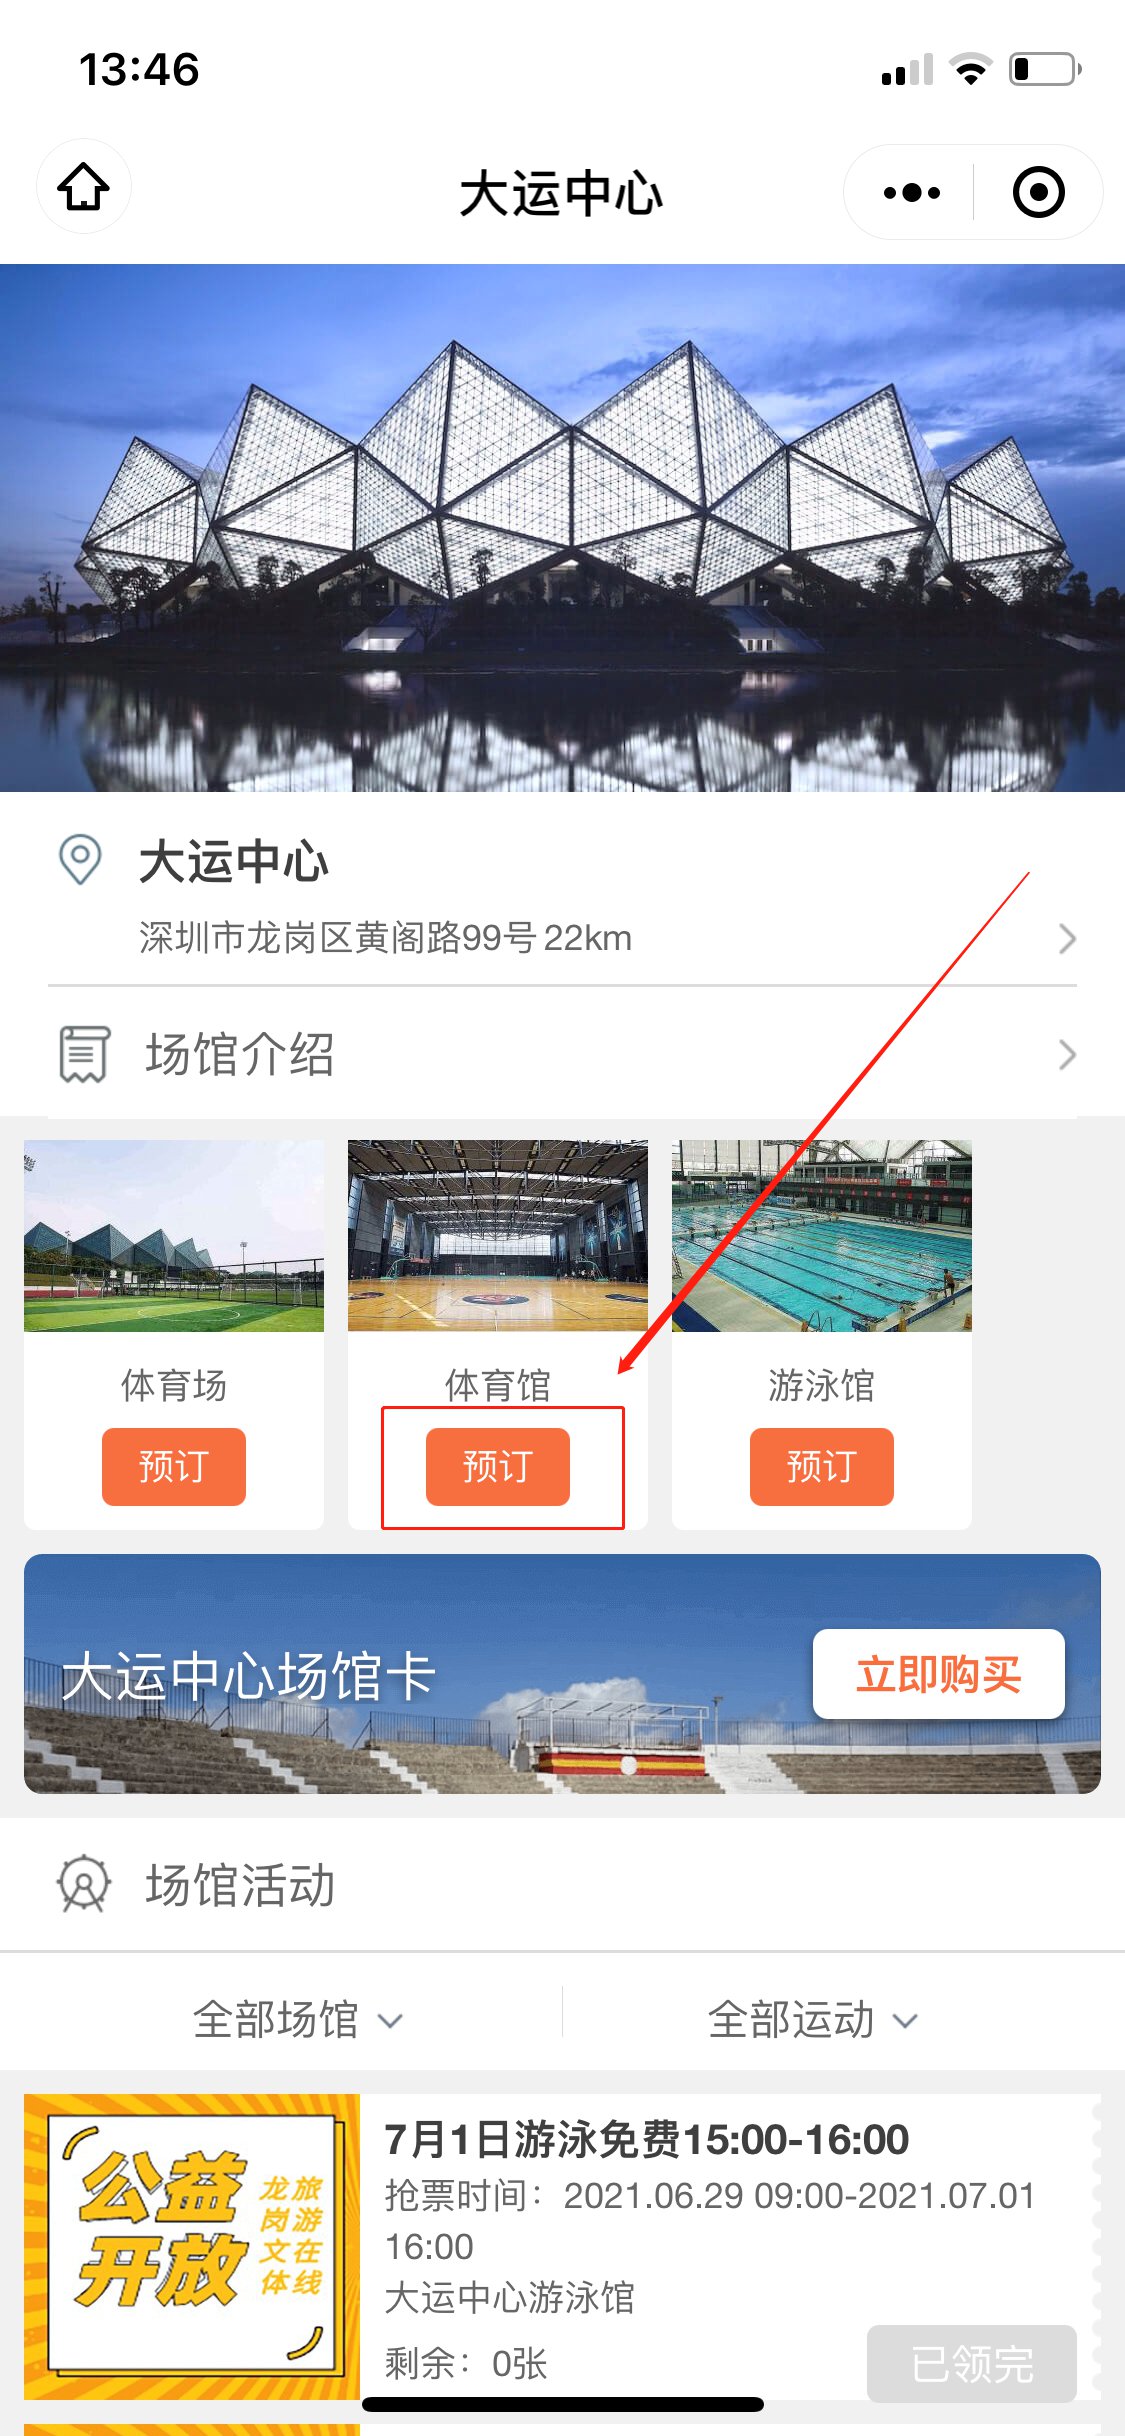 深圳大运中心体育馆预订流程，附详细图解（二）